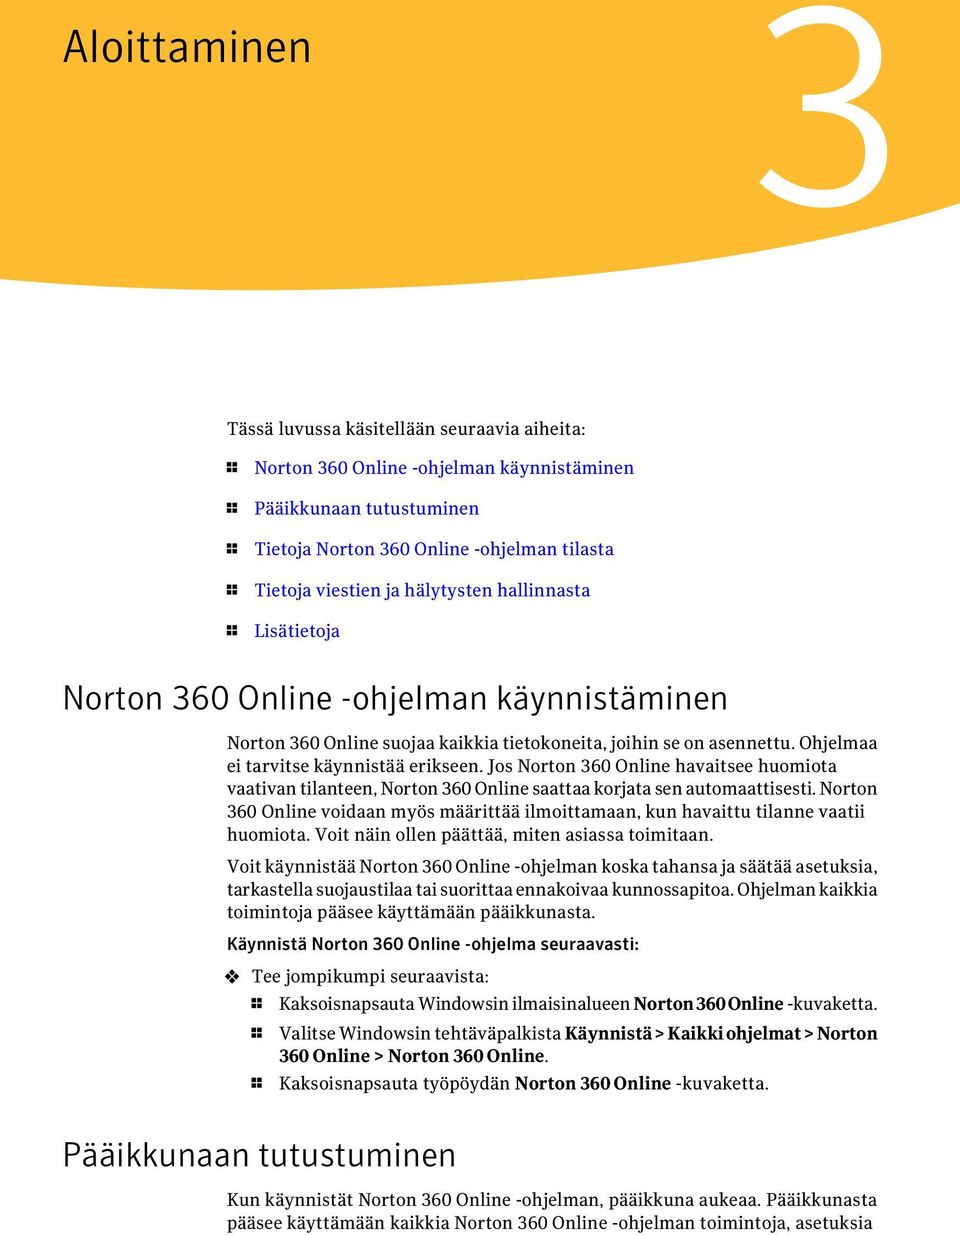 Jos Norton 360 Online havaitsee huomiota vaativan tilanteen, Norton 360 Online saattaa korjata sen automaattisesti.